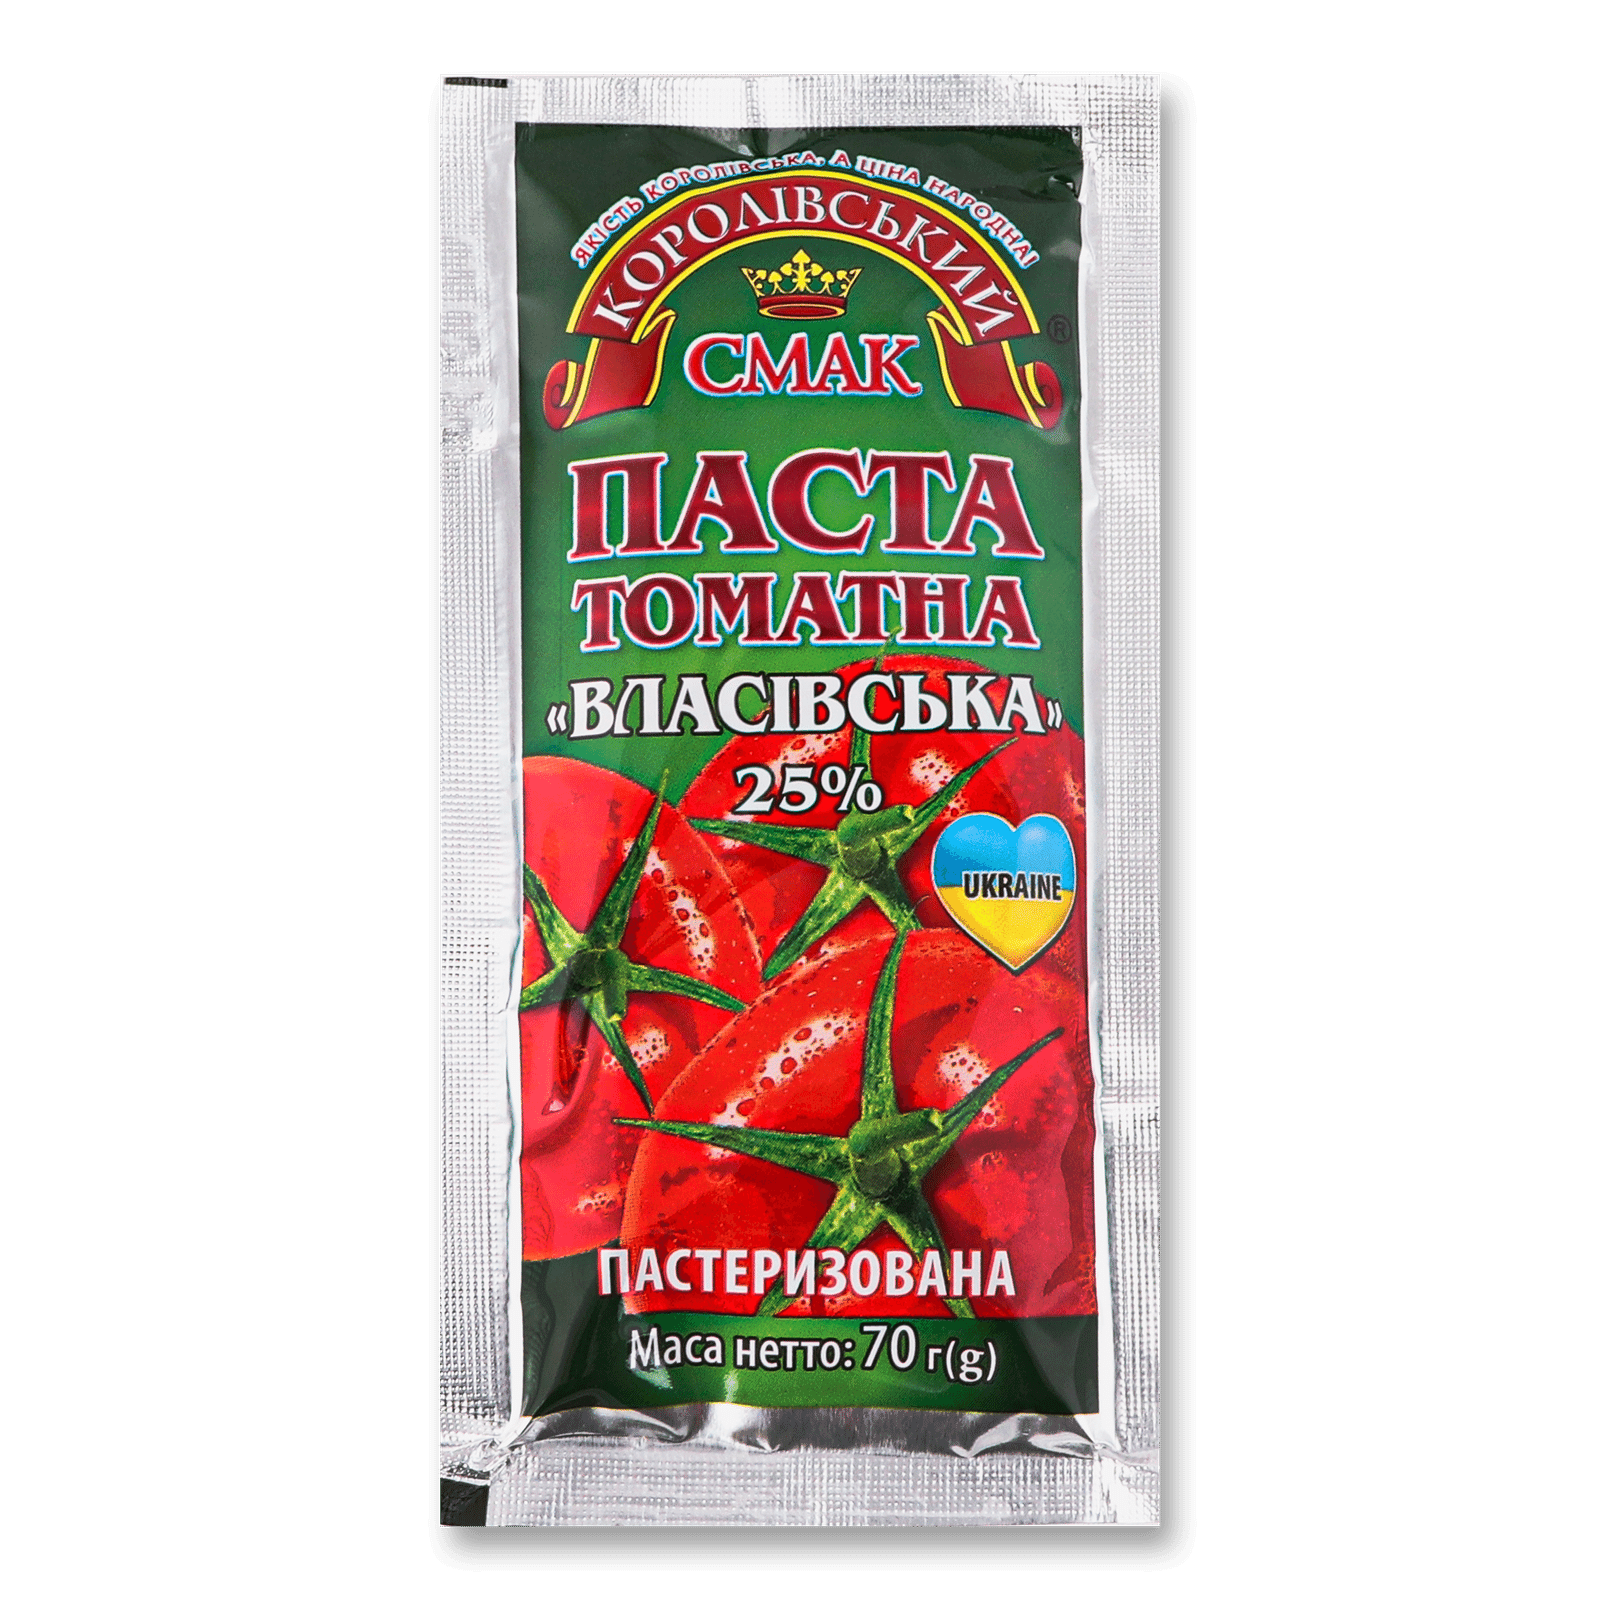 Паста томатна «Королівський смак» «Власівська» 25% - 1